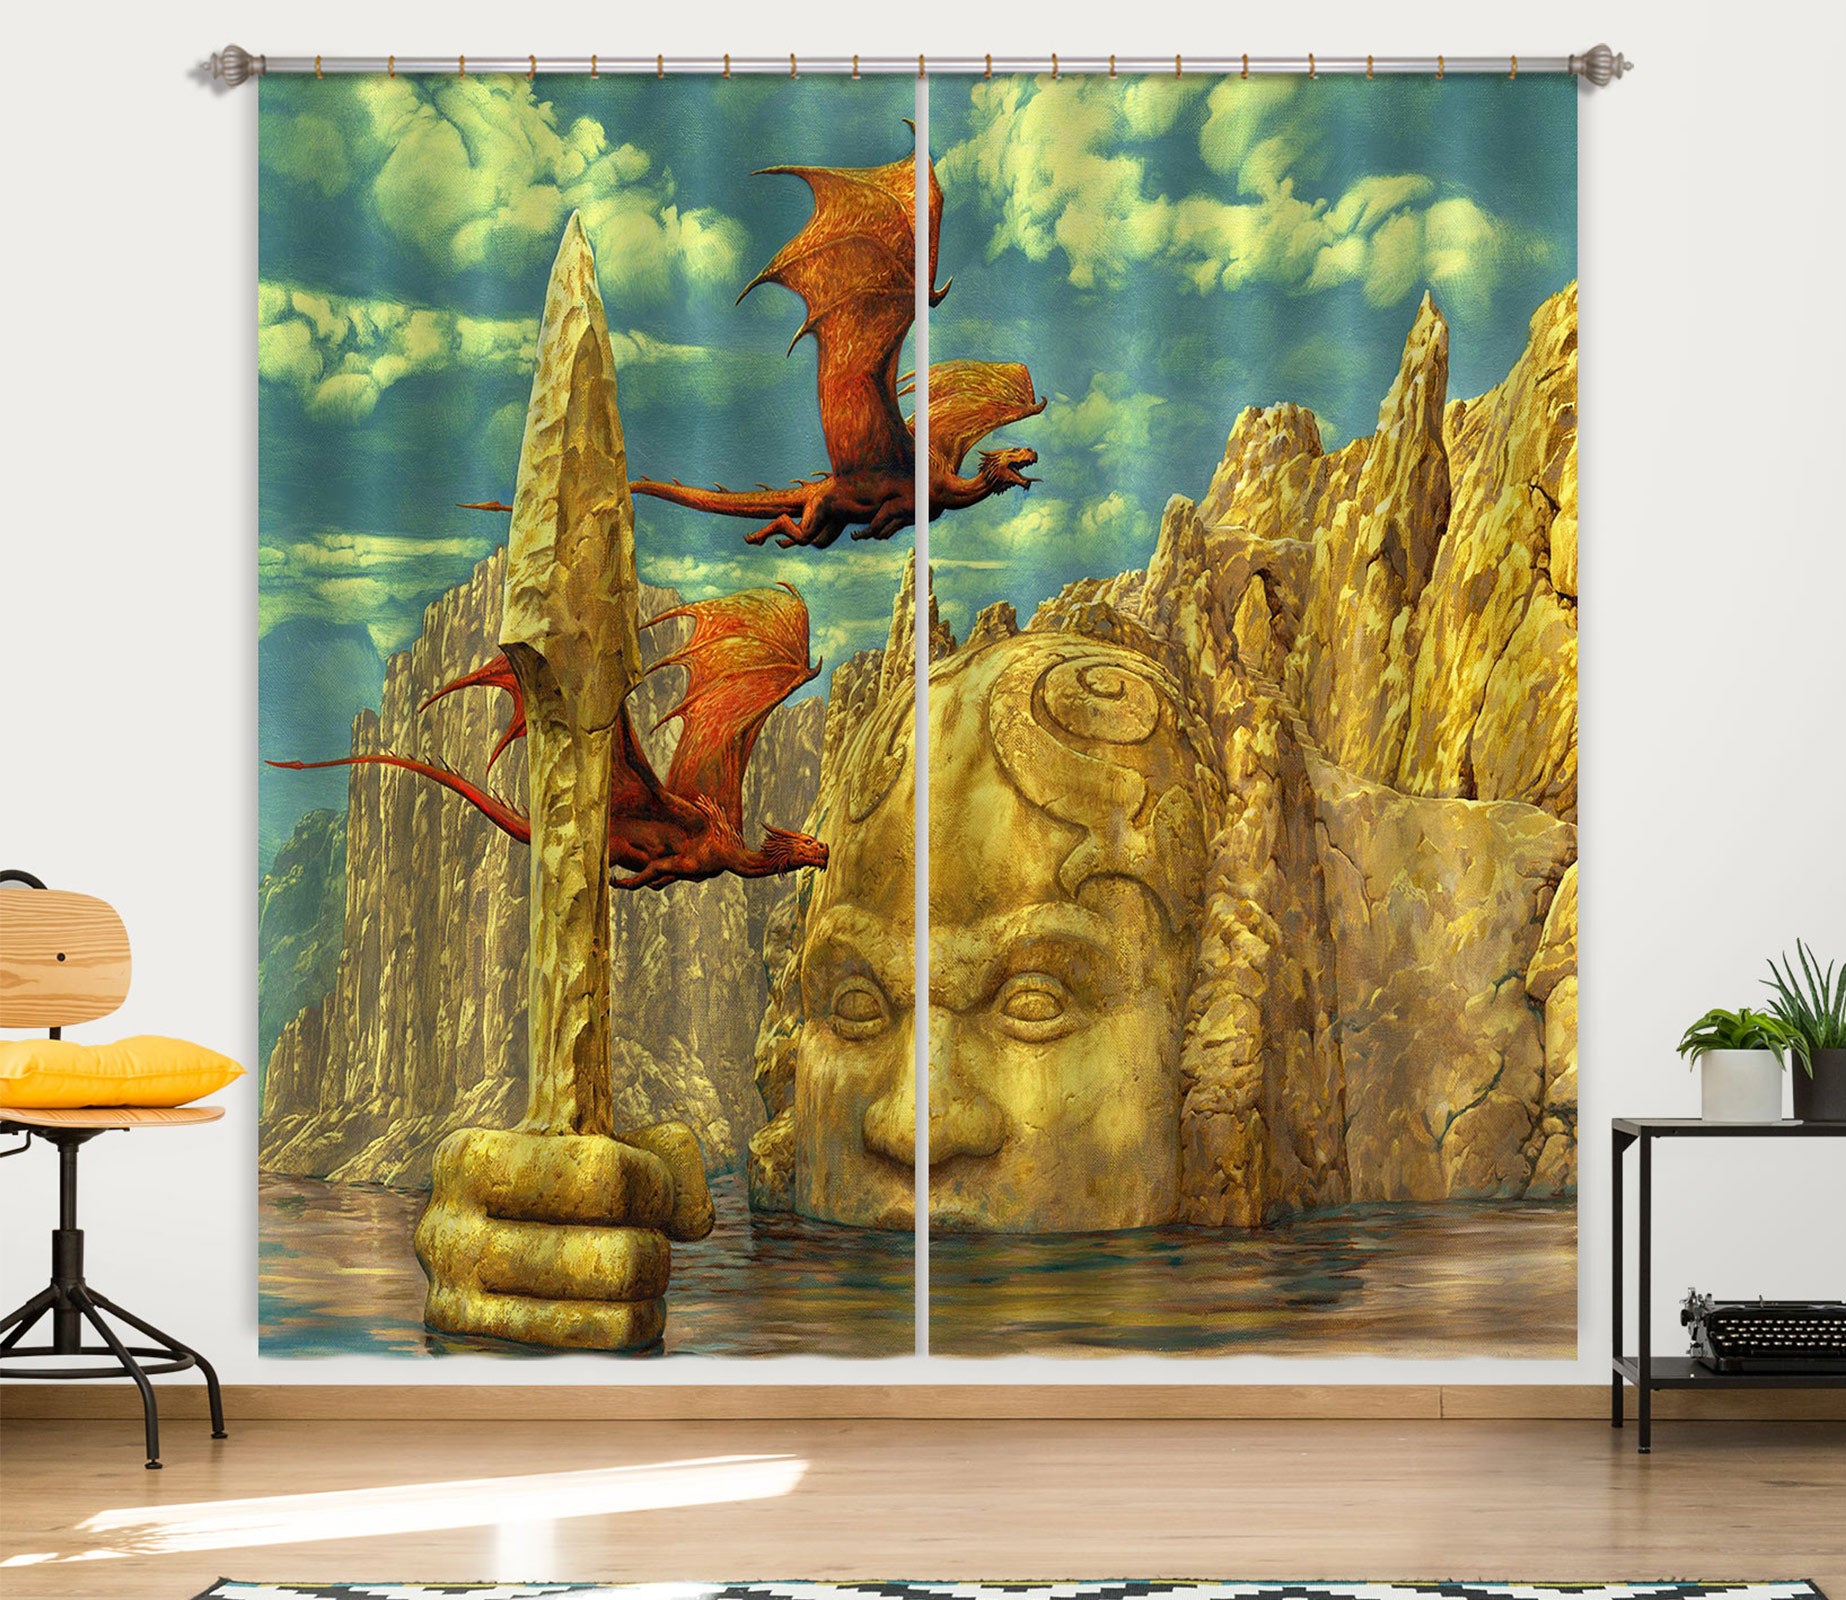 3D Statue Dragon 7217 Ciruelo Curtain Curtains Drapes